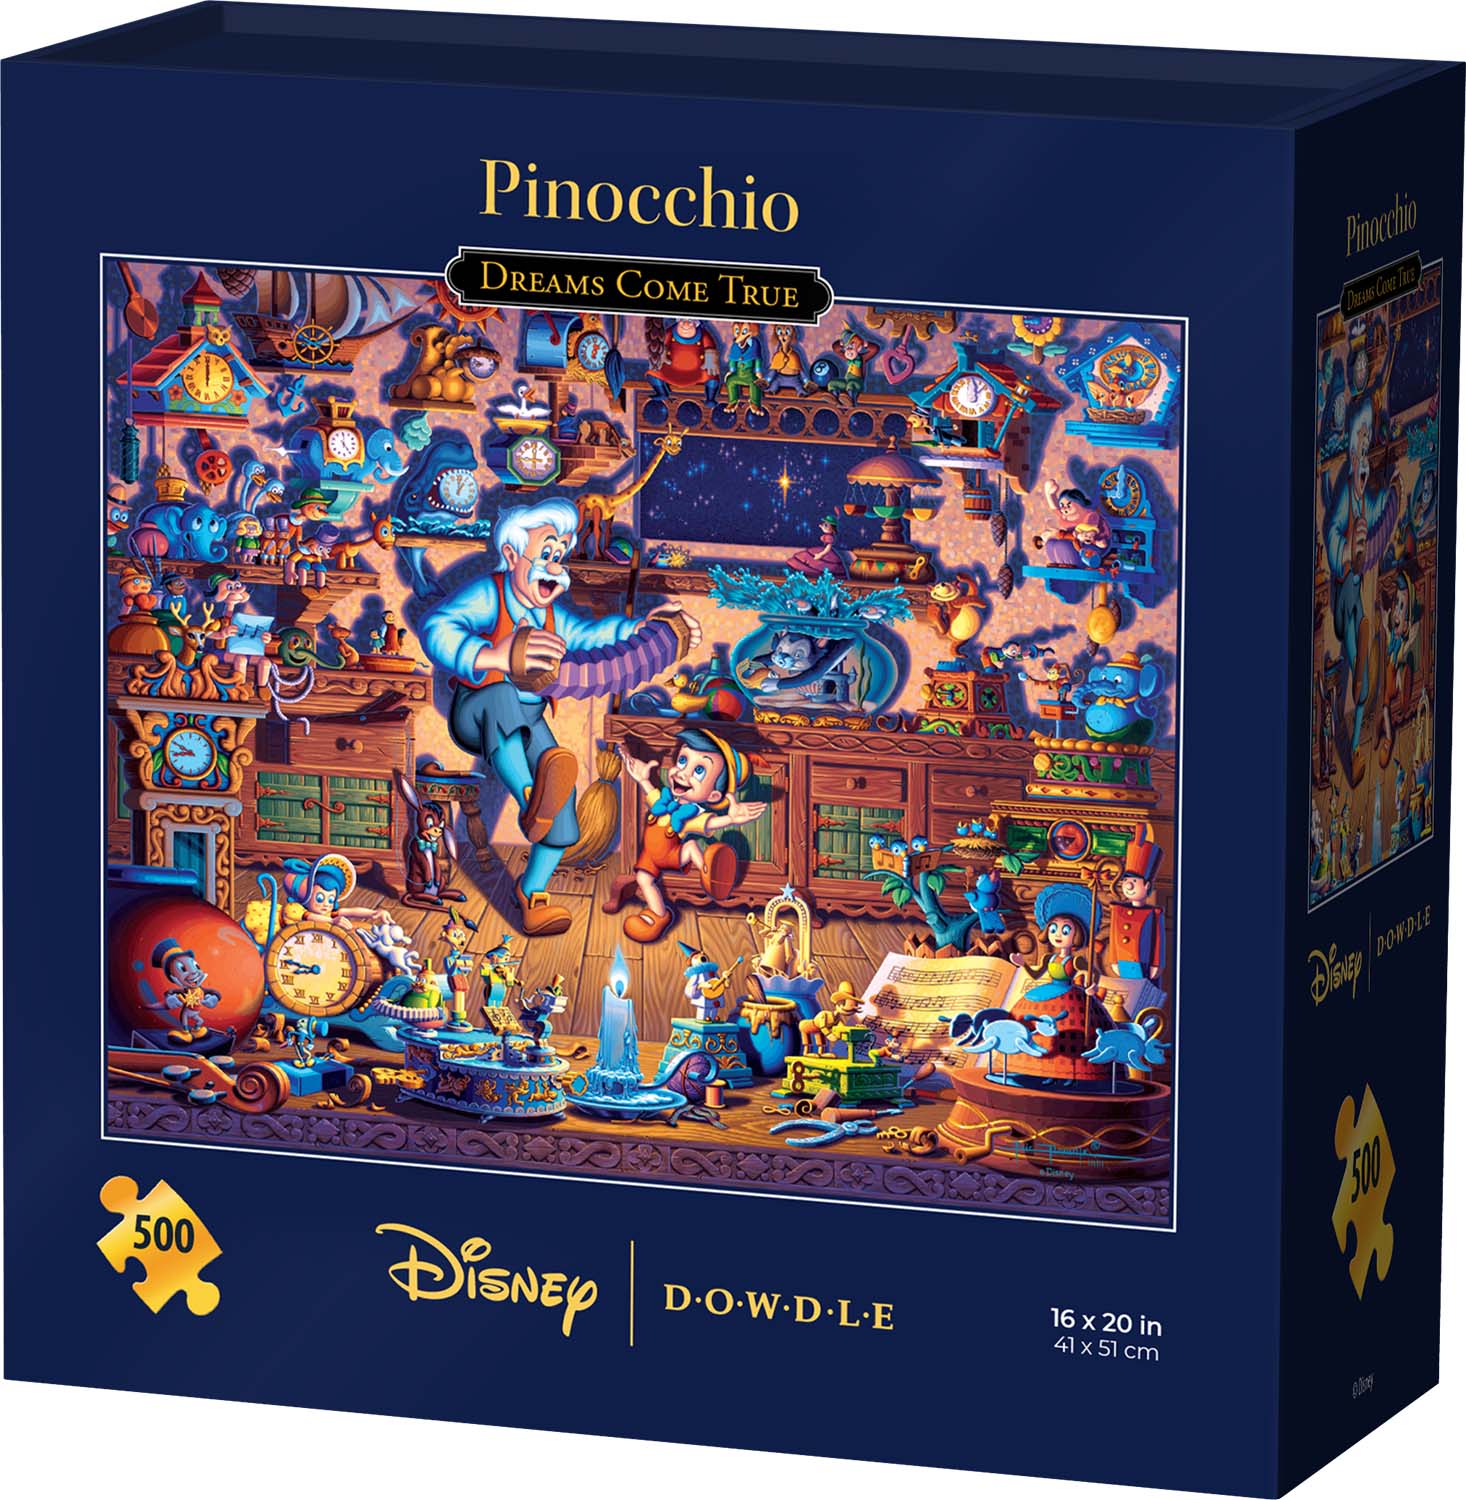 Pinocchio Dreams Come True Disney Jigsaw Puzzle